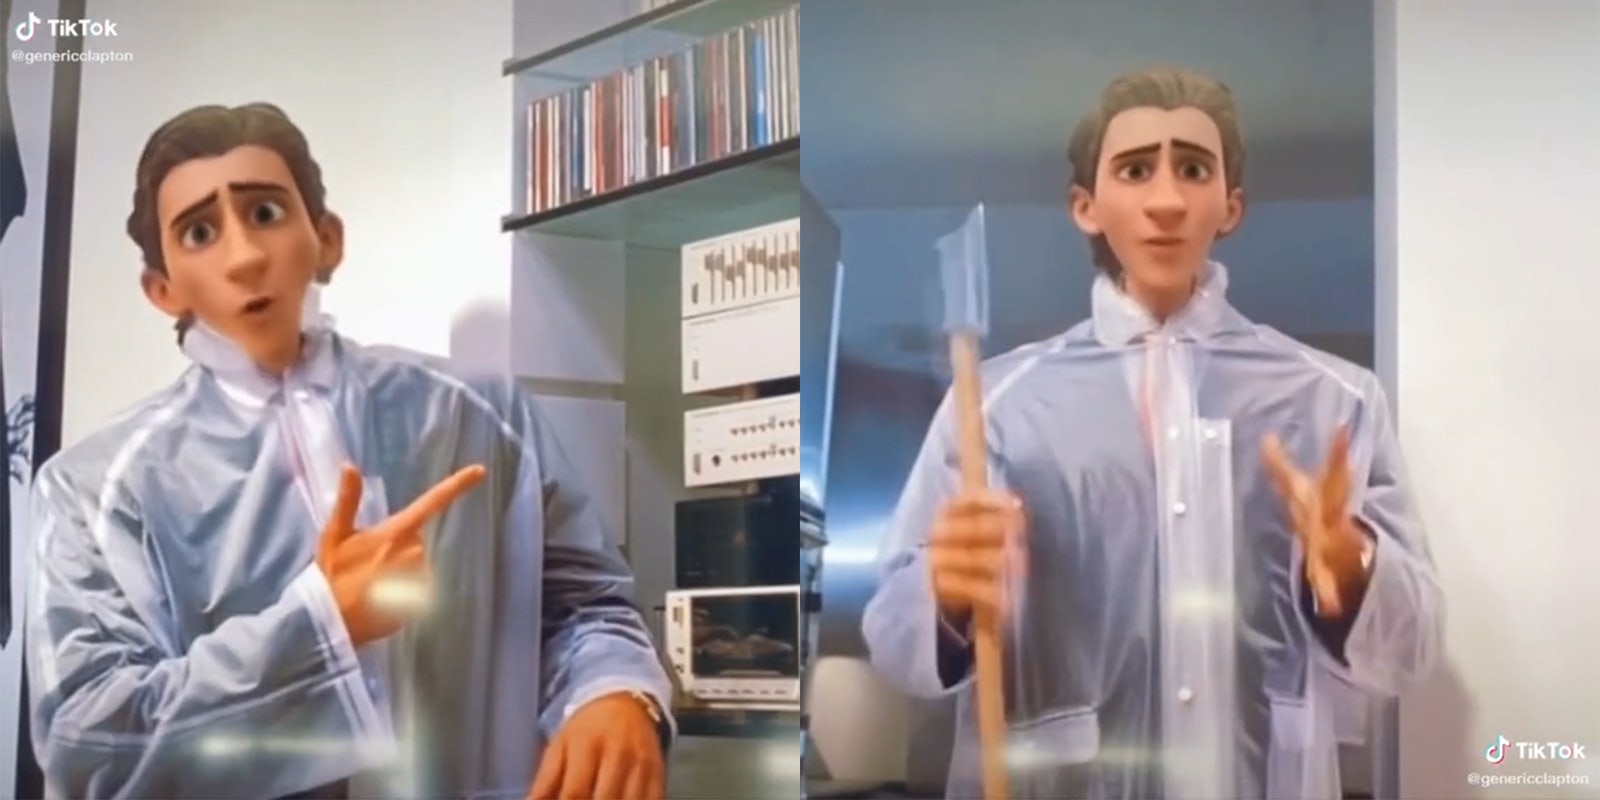 American Psycho scenes with TikTok's 'Pixar' filter